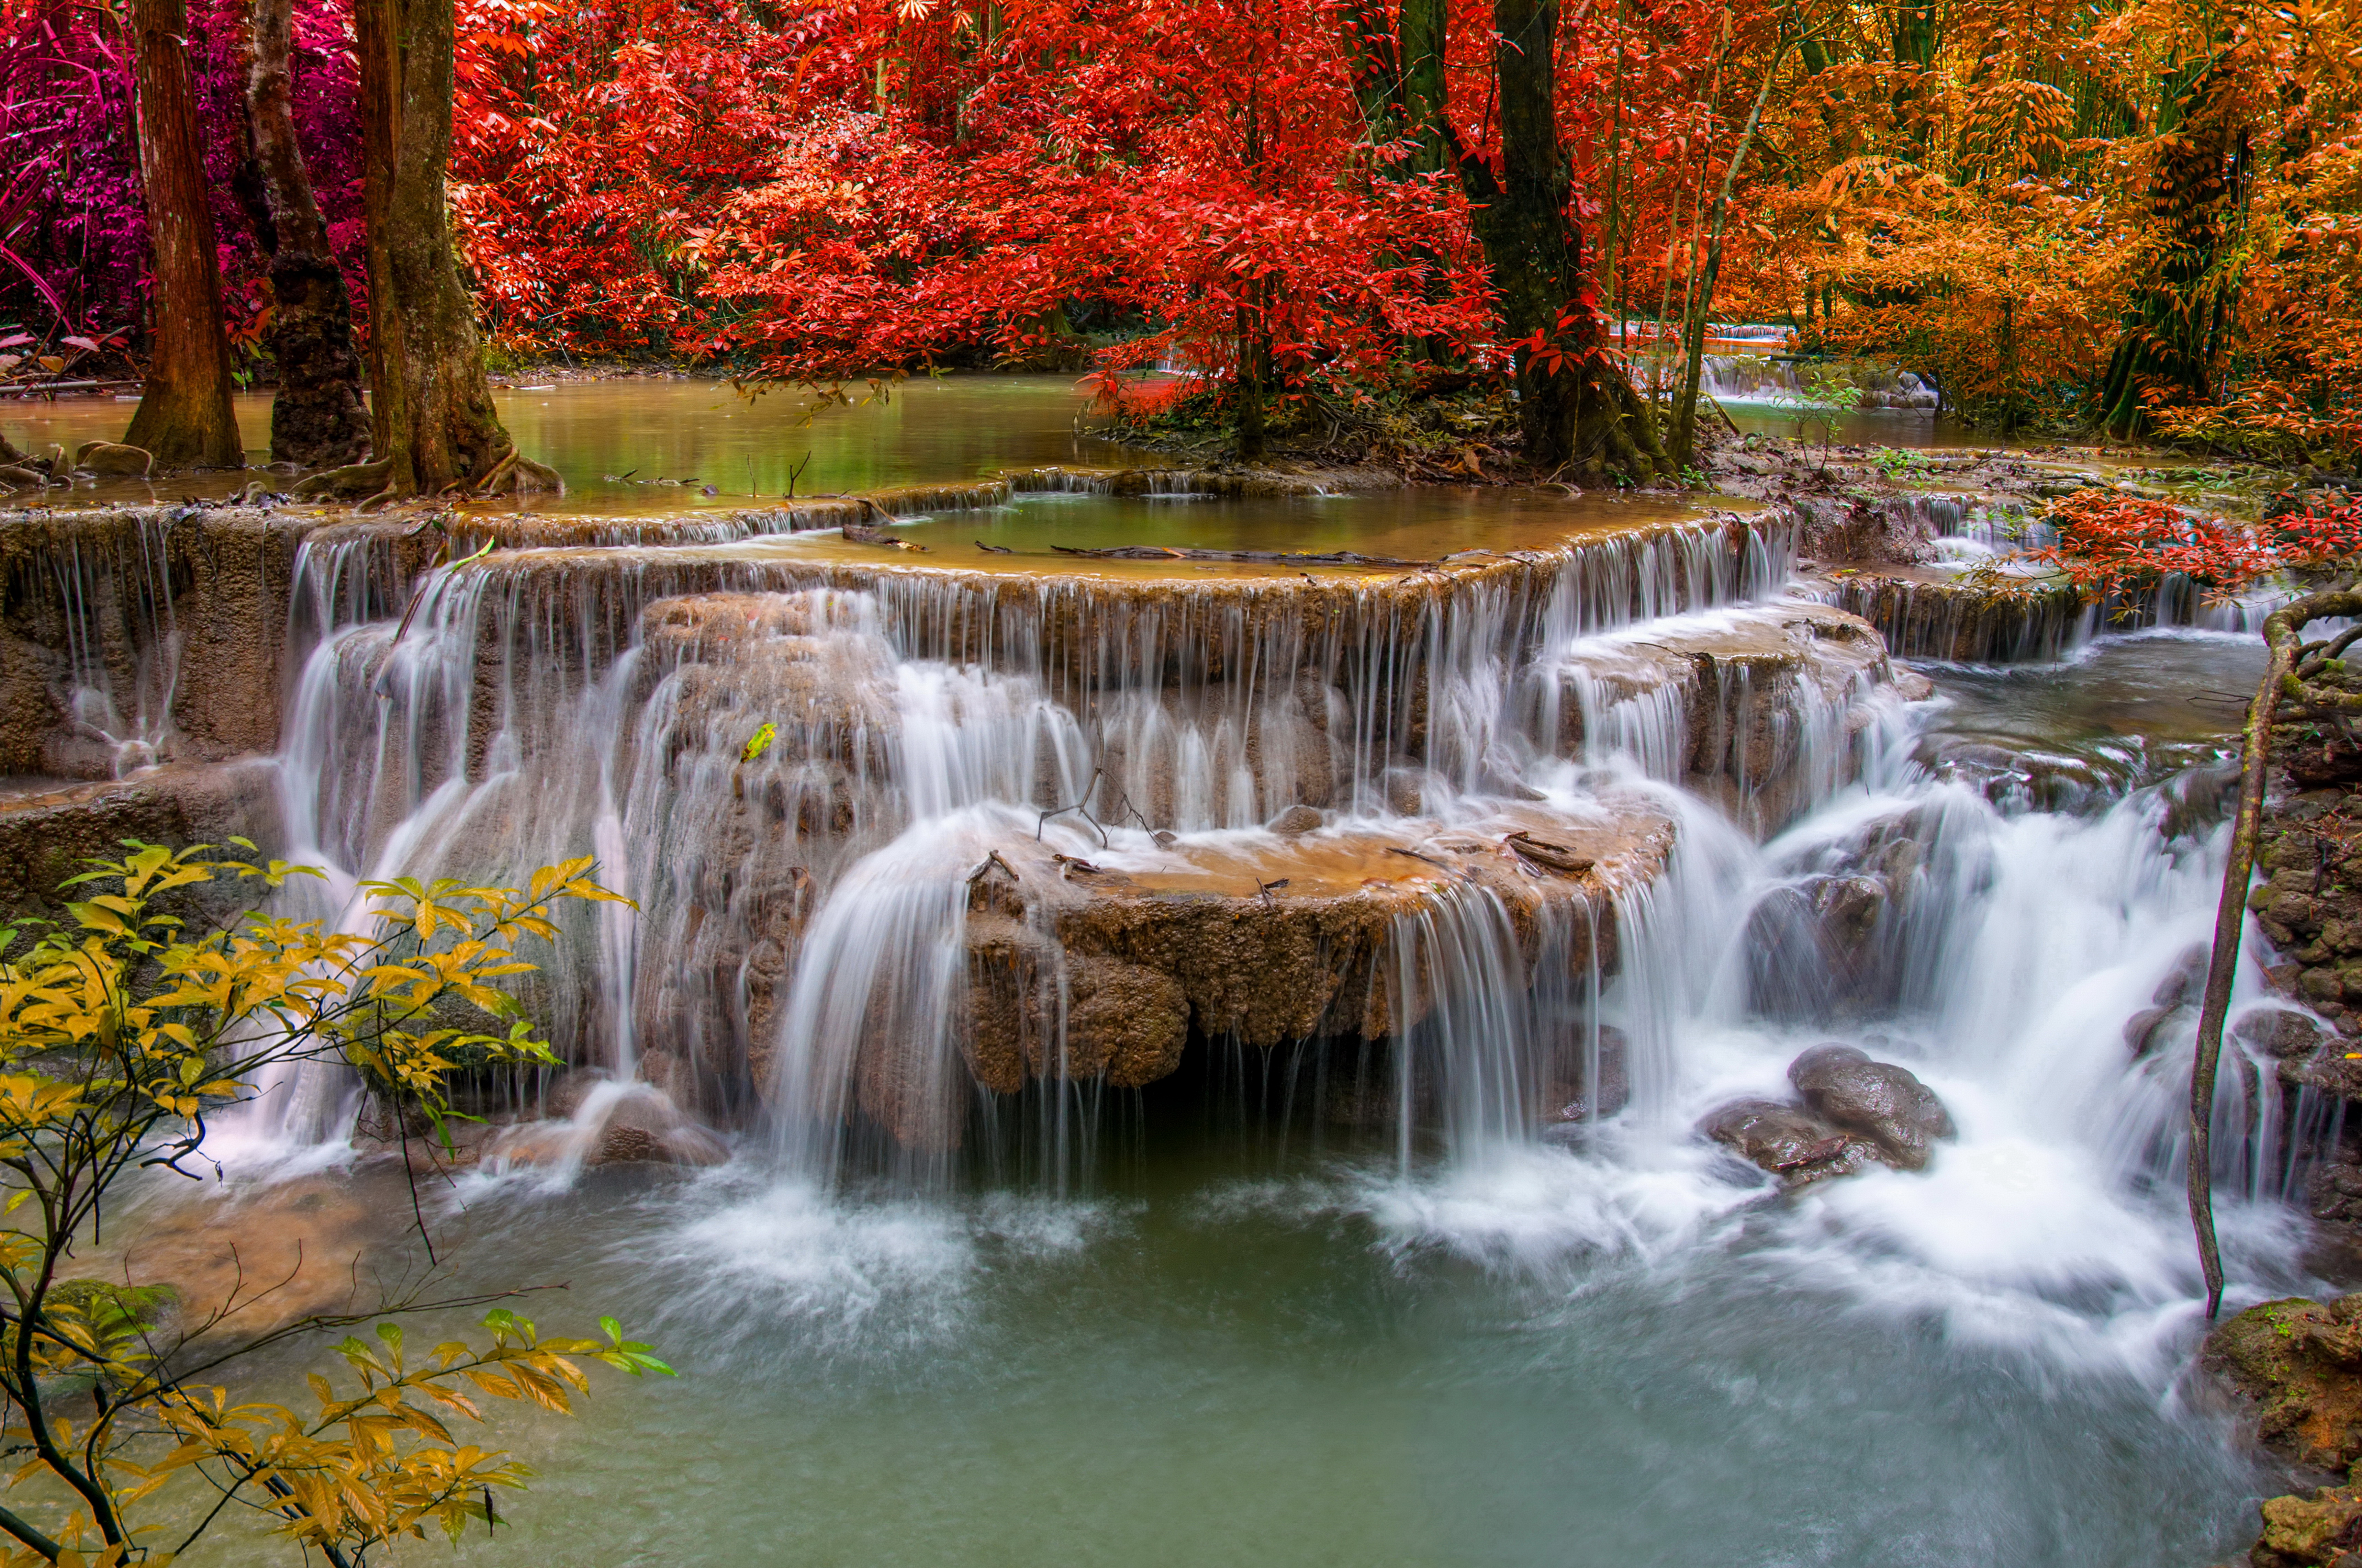 Обои на телефон живой водопад. Природа. Красивые водопады. Пейзажи природы водопады. Осенний водопад.